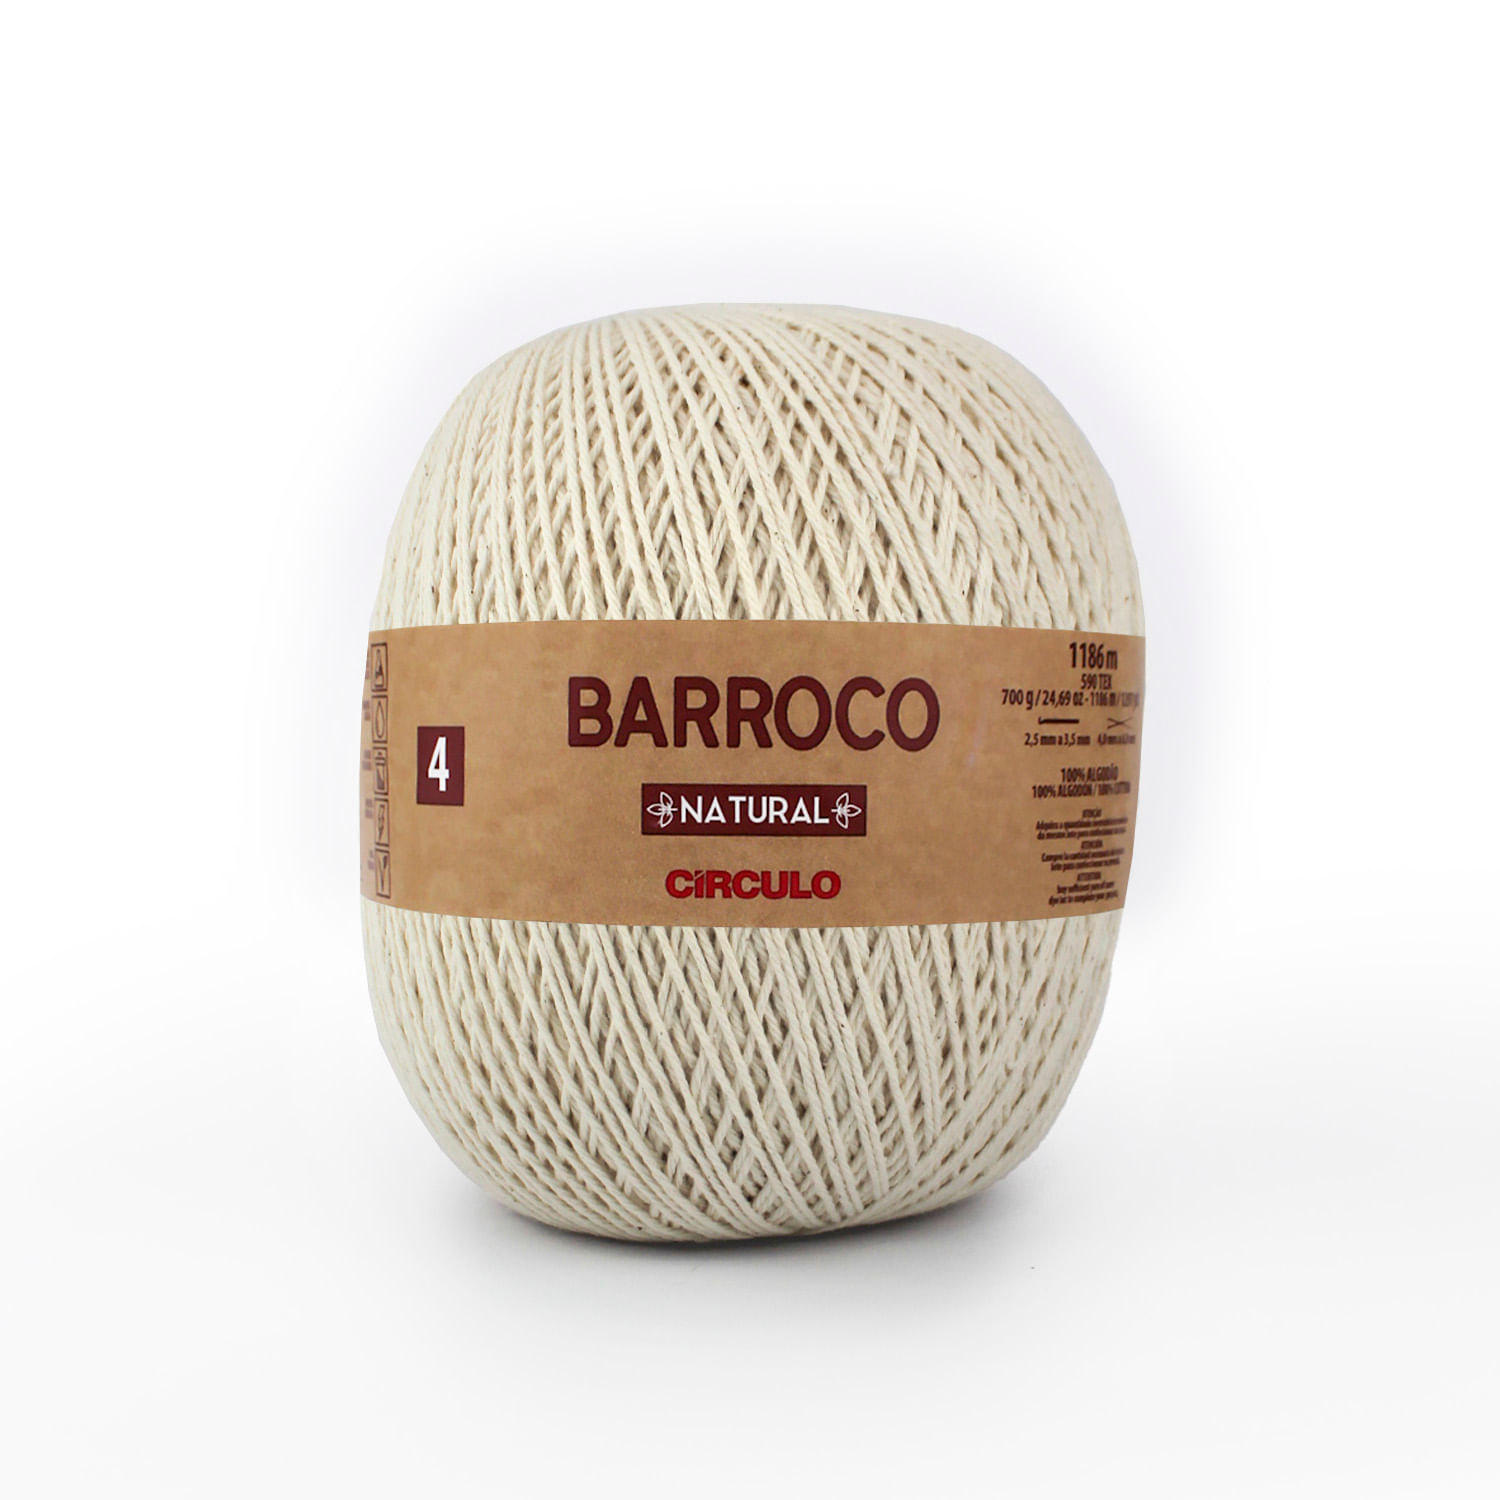 Barbante-Barroco-Natural-n4-700g-Della-Aviamentos-6493